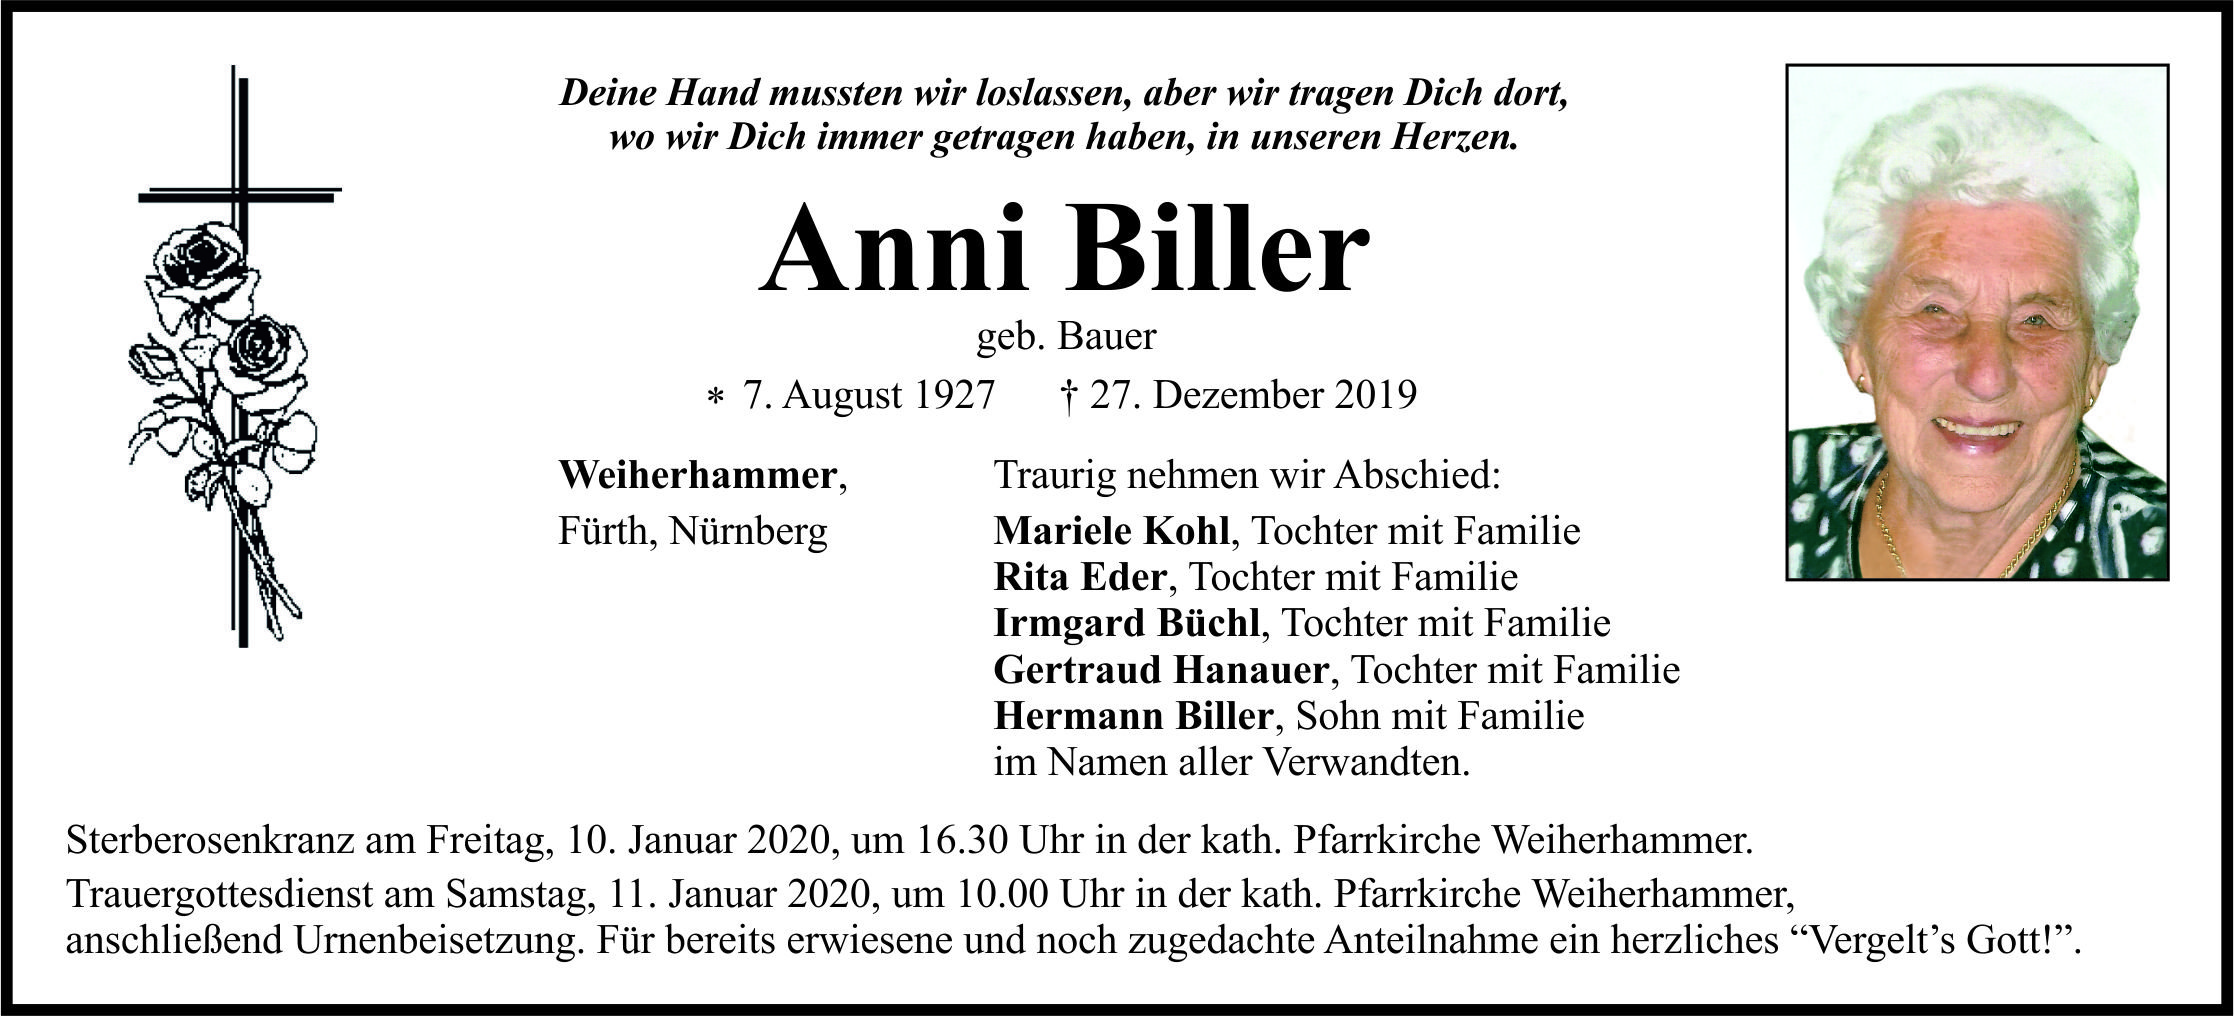 Traueranzeige Anni Biller, Weiherhammer